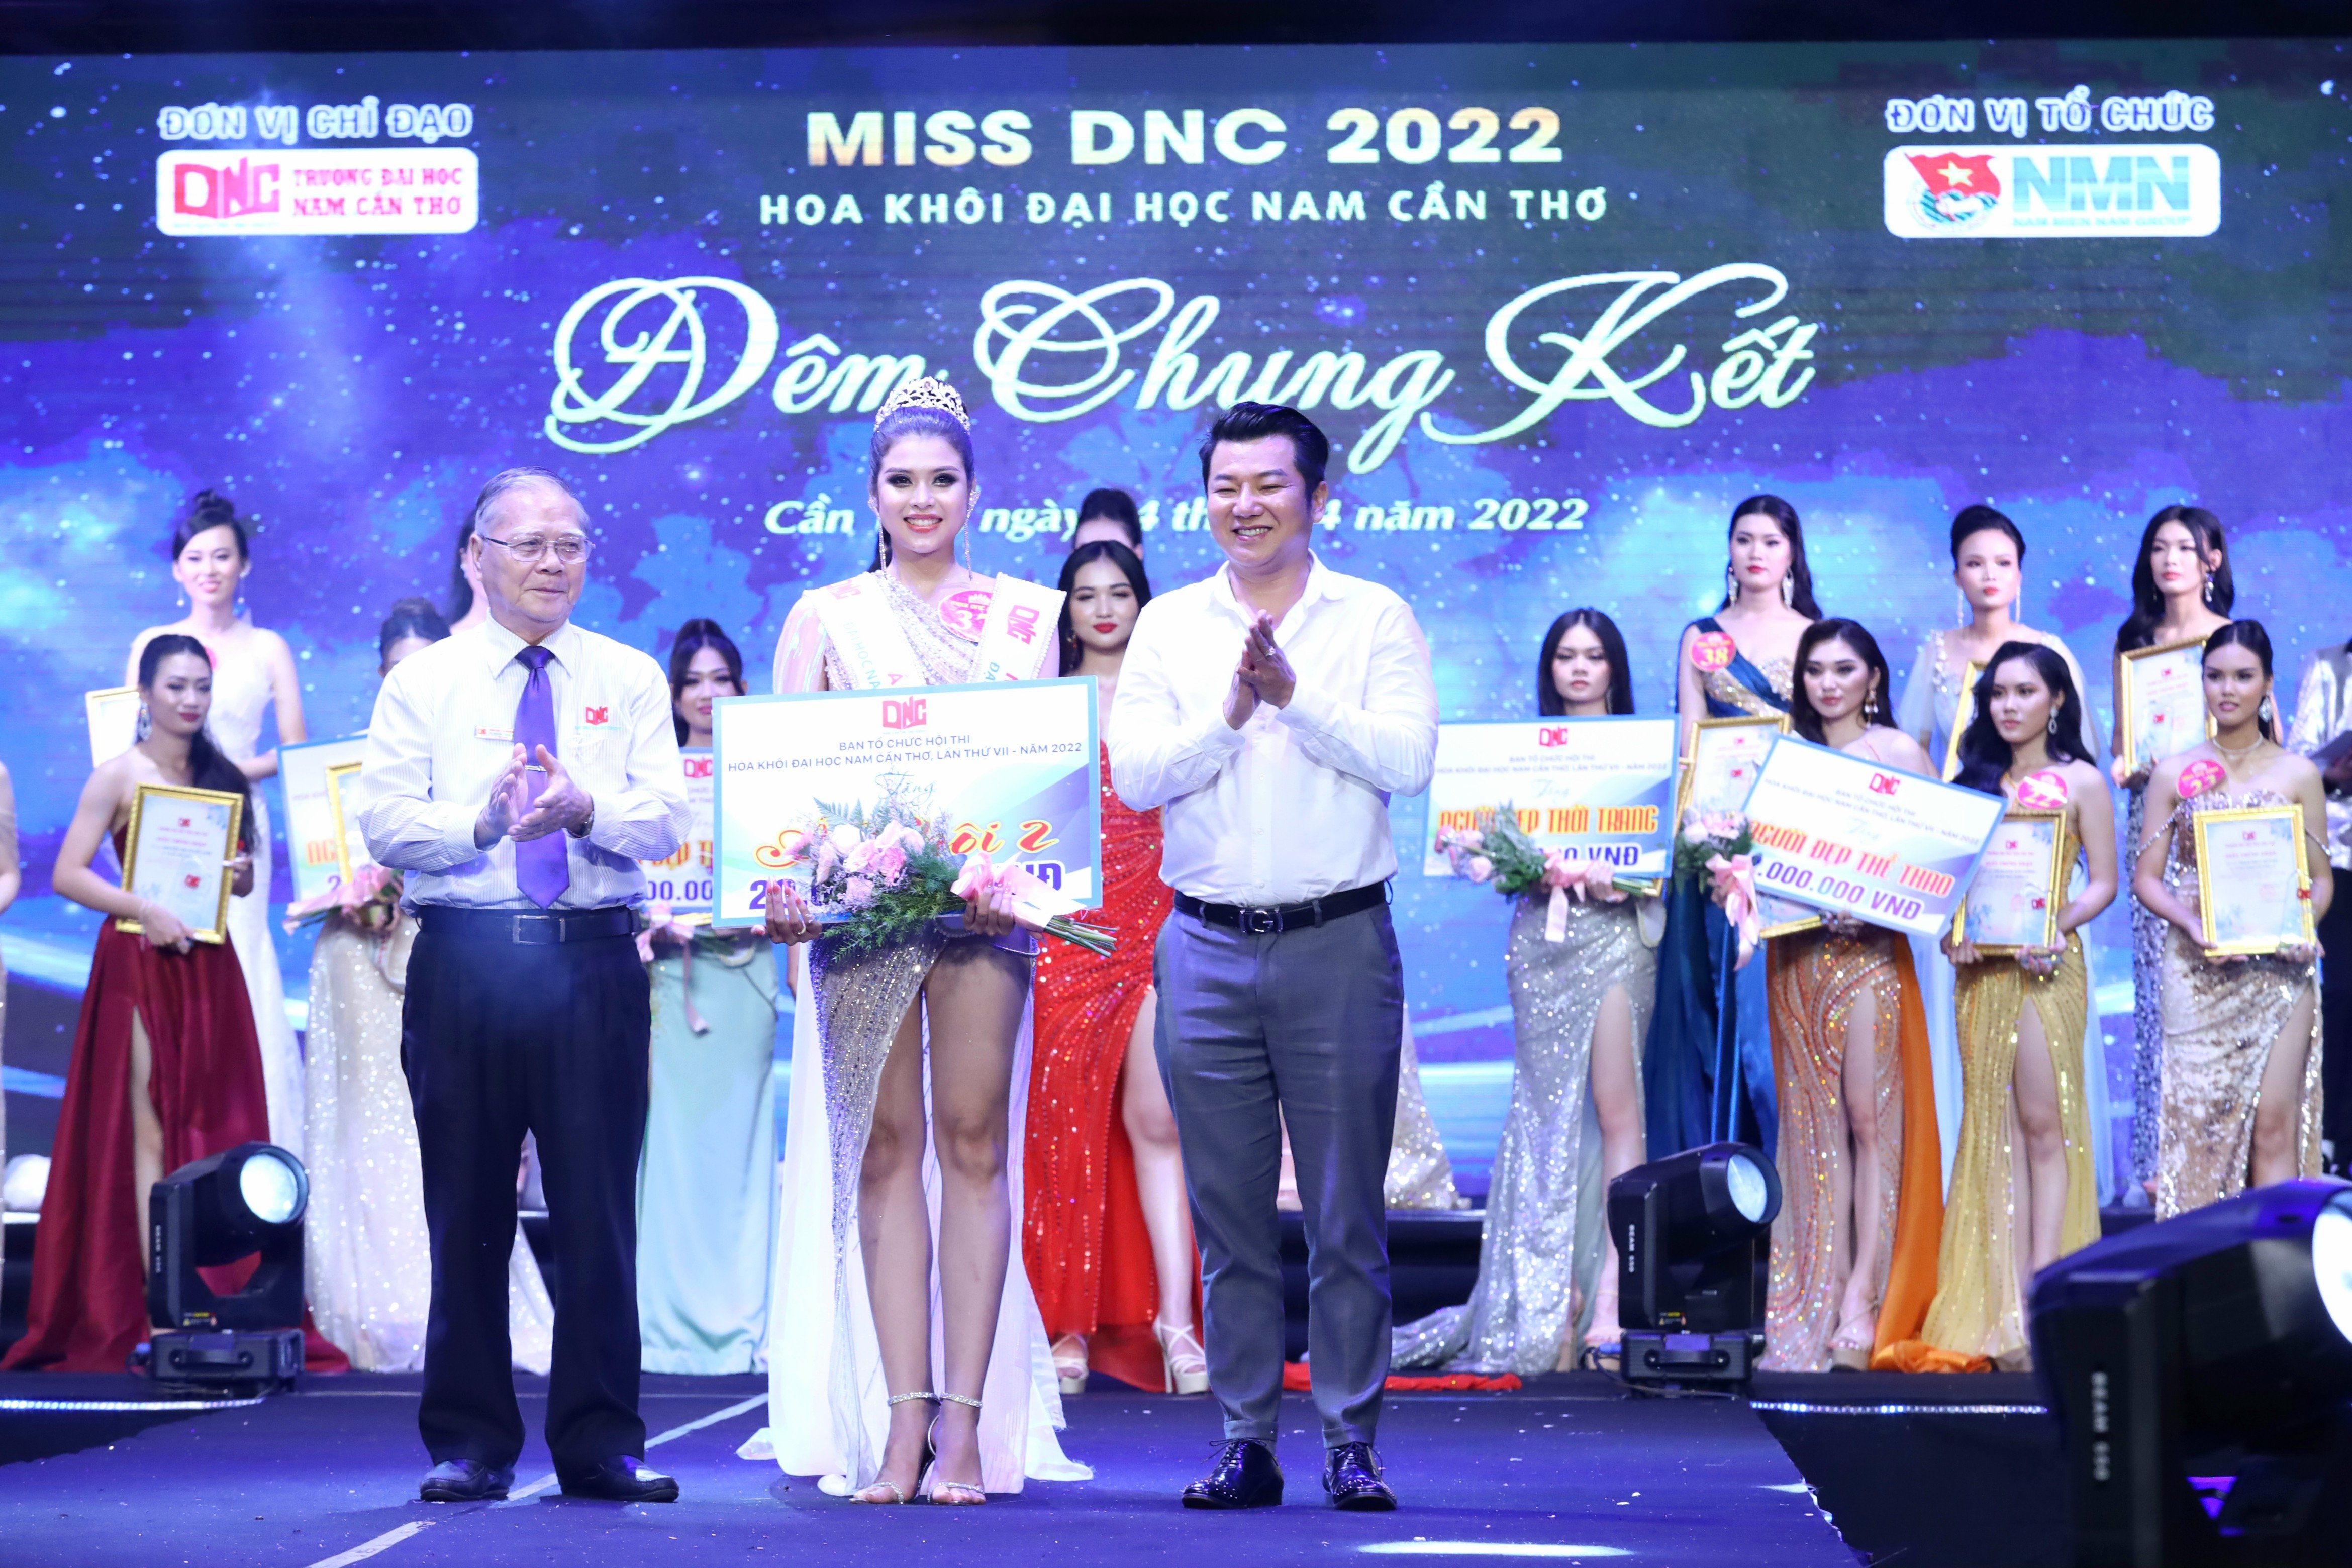 TS Nguyễn Văn Quang – Hiệu trưởng Trường Đại học Nam Cần Thơ trao giải Á khôi 2 cho thí sinh Trần Khả Di.